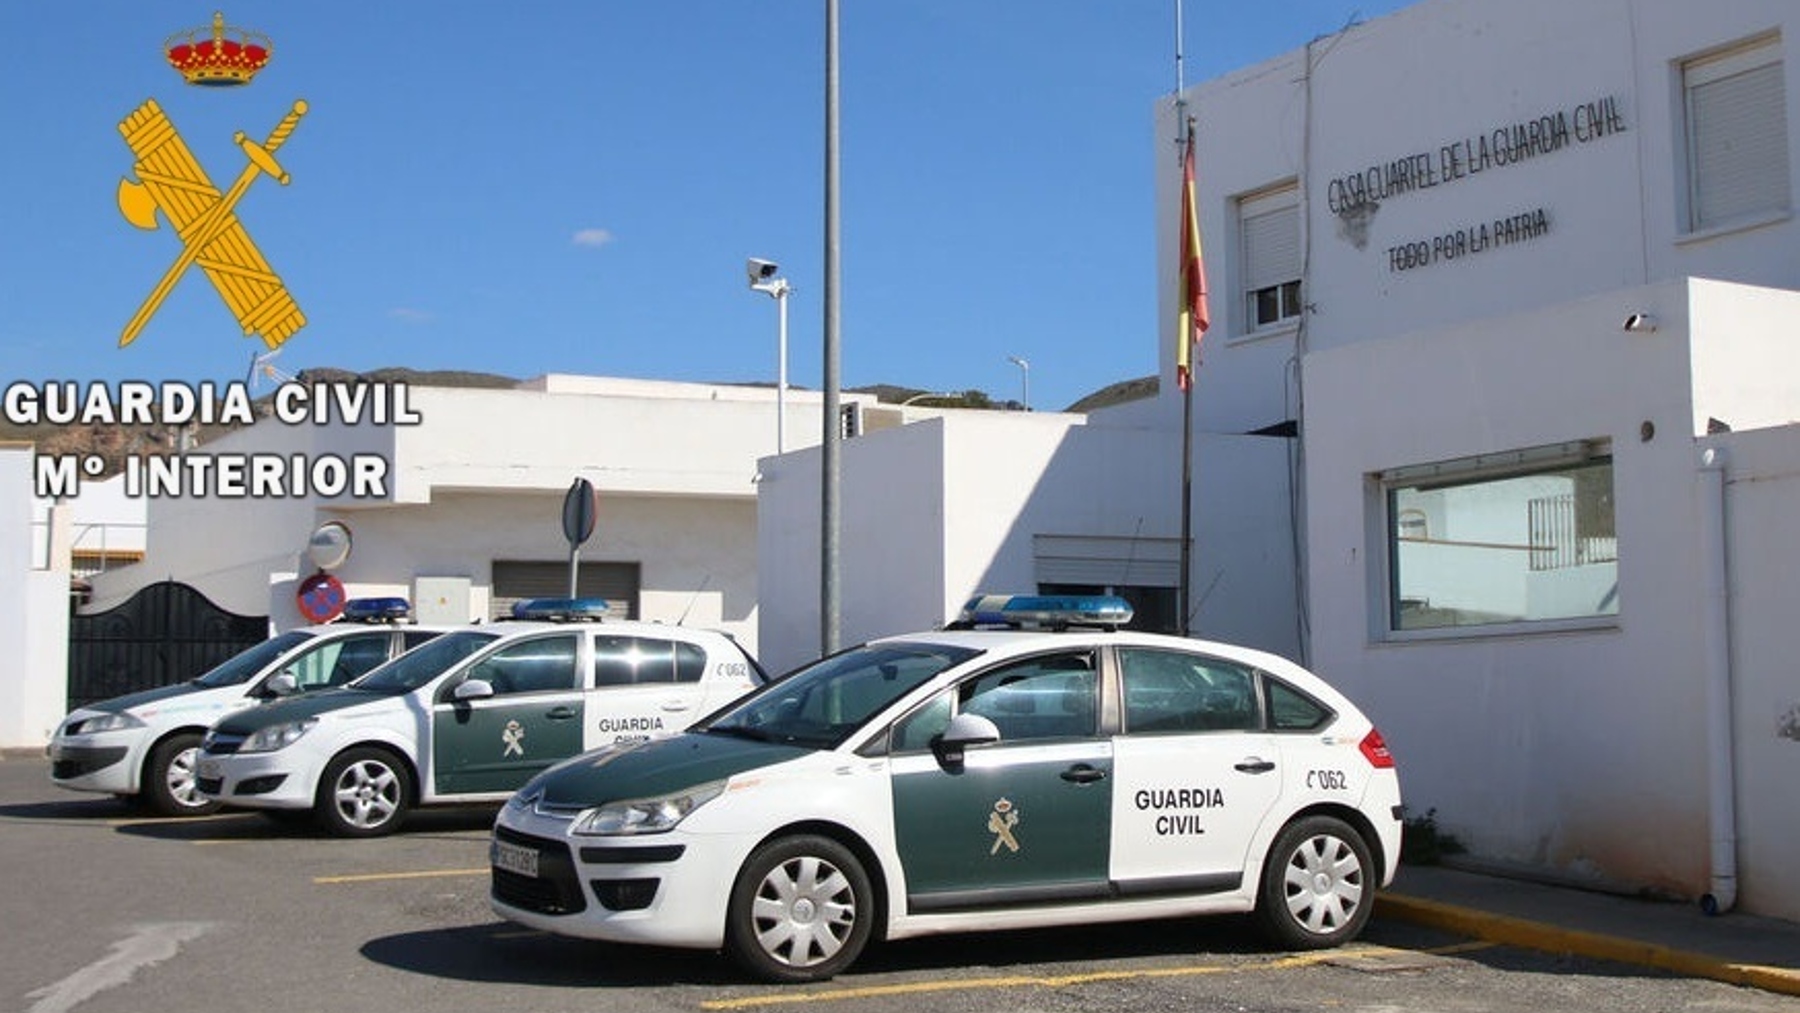 Cuartel de la Guardia Civil en Níjar, Almería (GC).